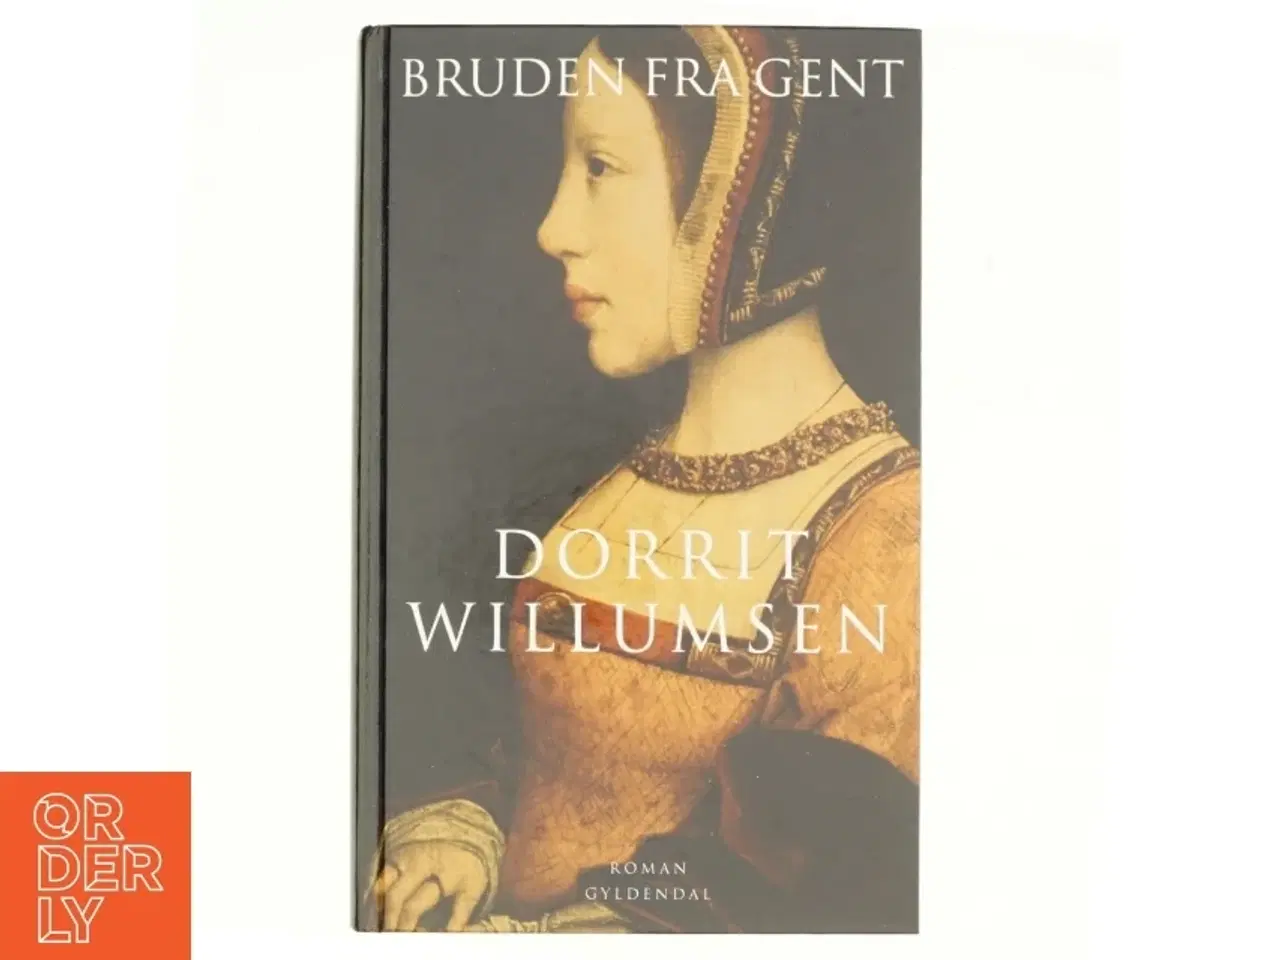 Billede 1 - Bruden fra Gent : roman af Dorrit Willumsen (Bog)